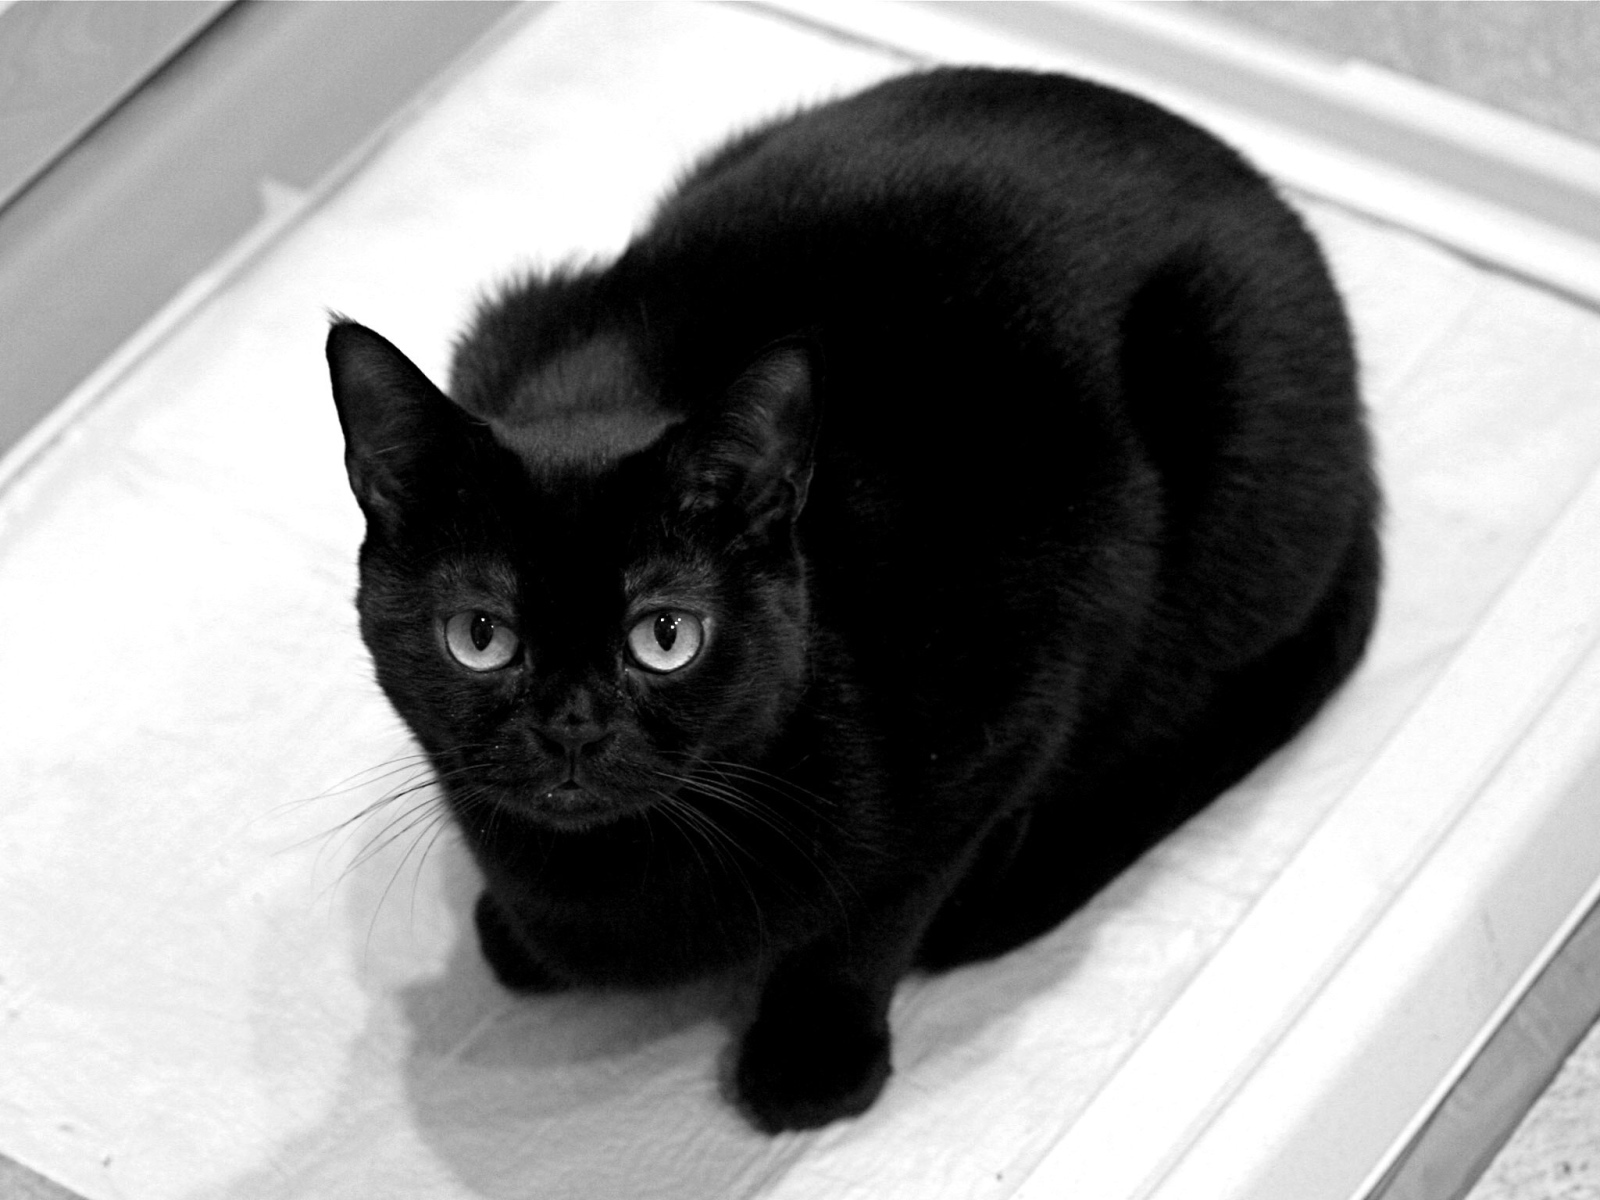 Чёрный кот смотрит на фотографа